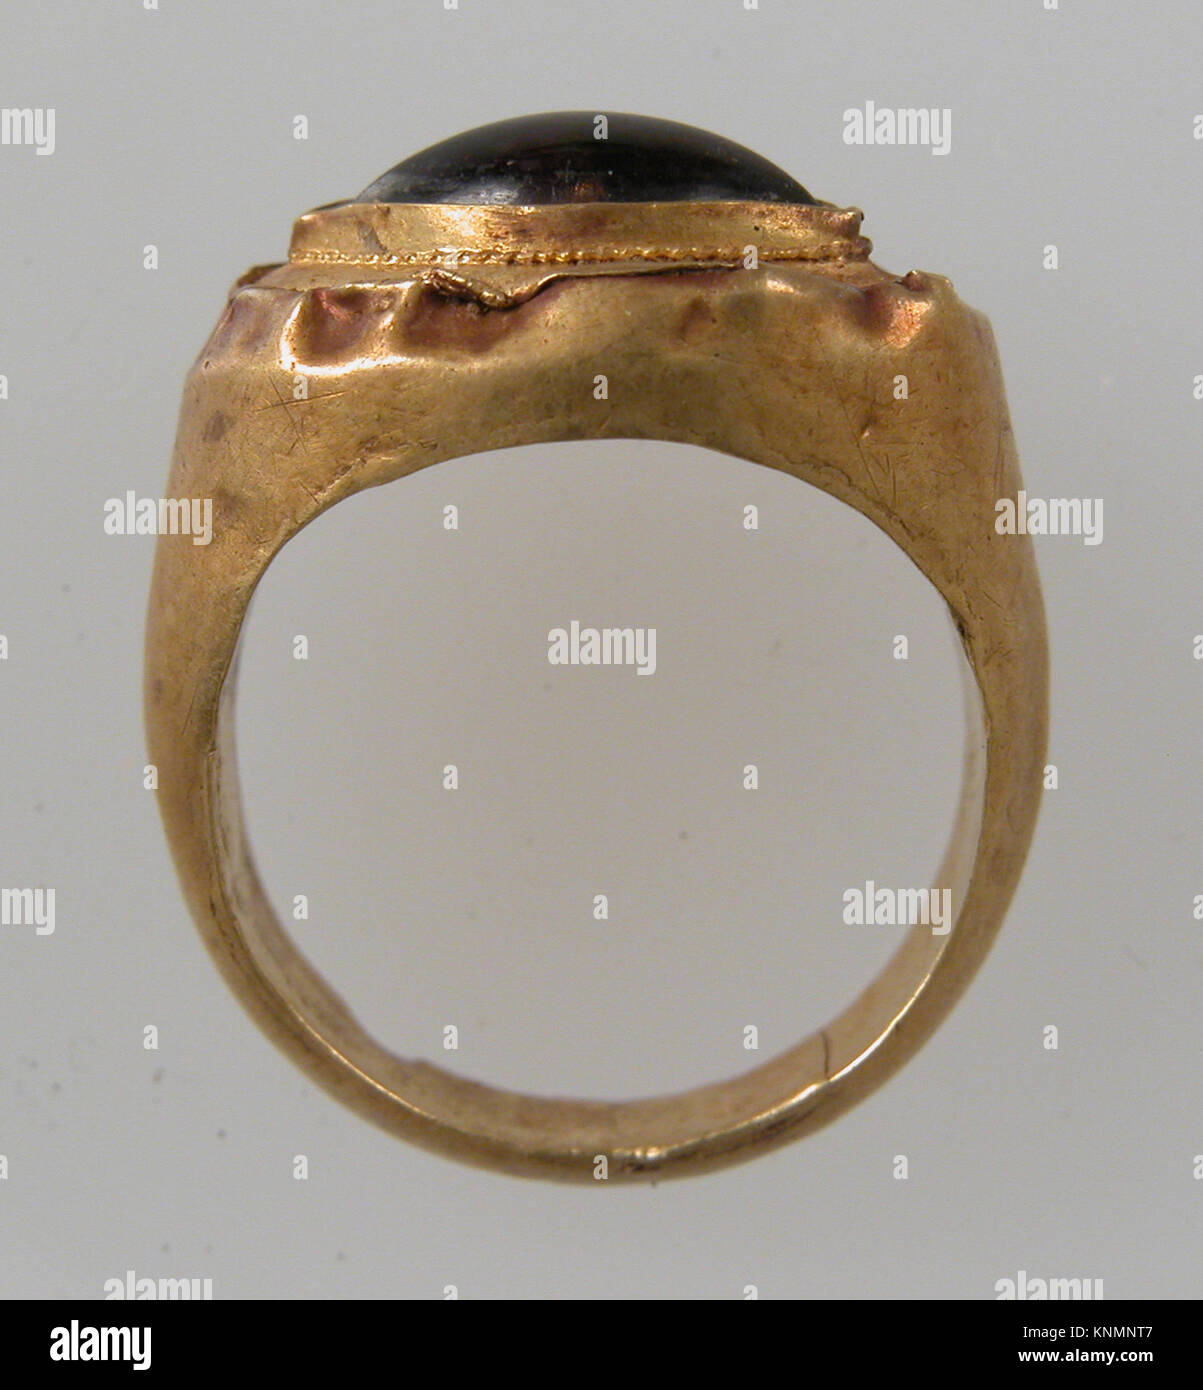 Finger Ring mit ovaler Blende MET sf 17-192-195 s Fränkischen 1 465258, Finger Ring mit ovaler Einfassung, 7. Jahrhundert, Gold, Granat Cabochon, Insgesamt: 13/16 x 11/16 x 3/8 in. (2,1 x 1,7 x 1 cm) Lünette: 5/16 x 3/16 in. (0,8 x 0,4 cm). Das Metropolitan Museum of Art, New York. Geschenk der J. Pierpont Morgan, 1917 (17.192.195) Stockfoto